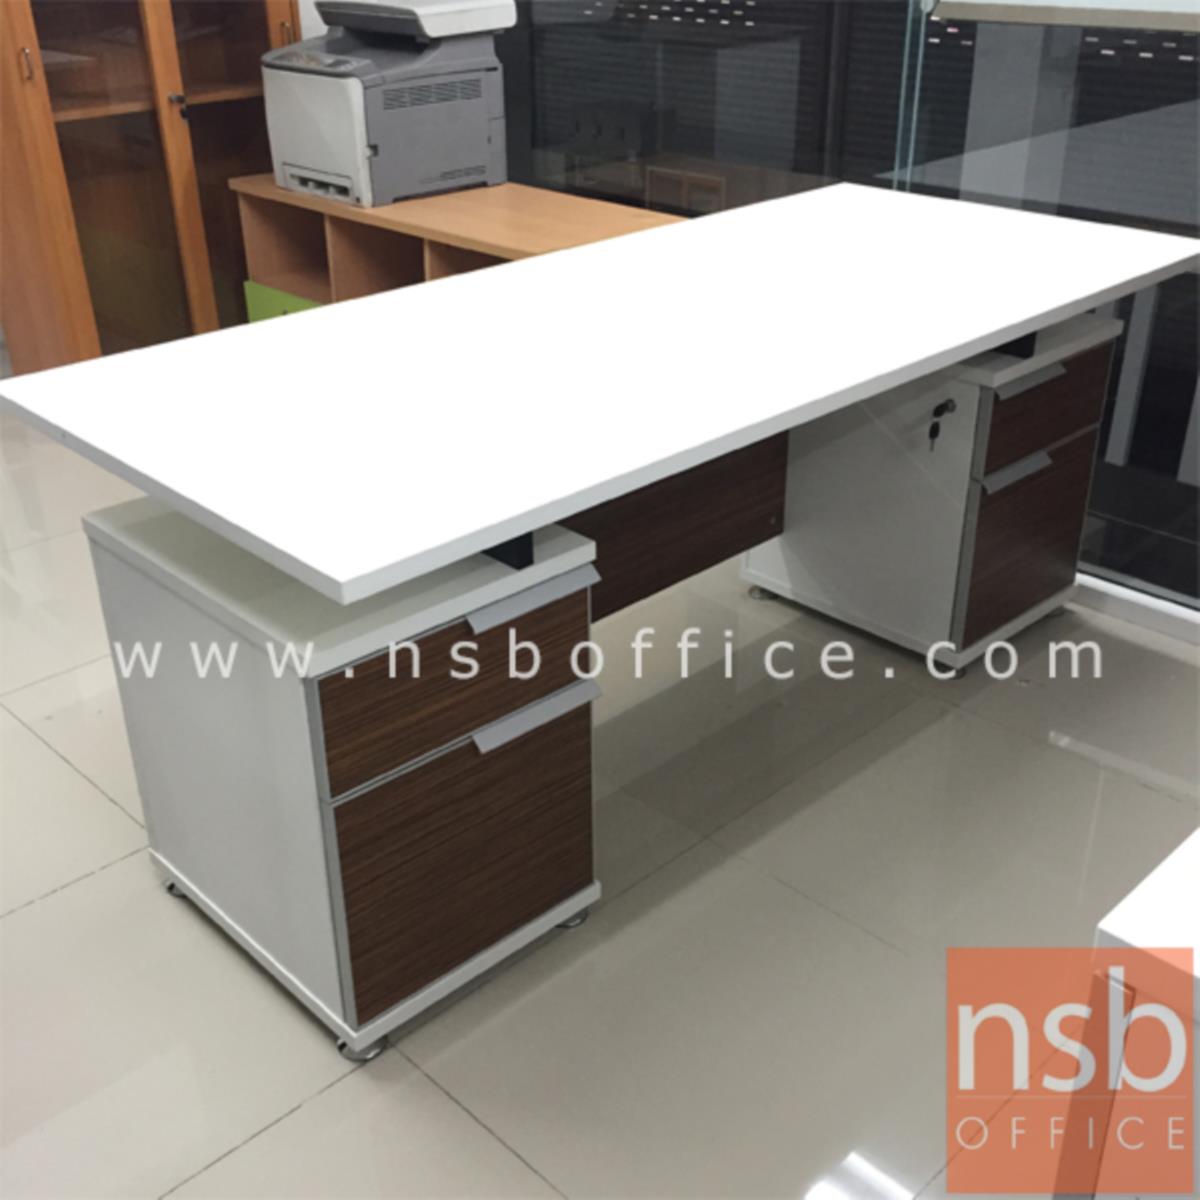 โต๊ะทำงาน 4 ลิ้นชัก  รุ่น Flabix (แฟล์บิกซ์) ขนาด 180W cm.  สีซีบราโน่-ขาว